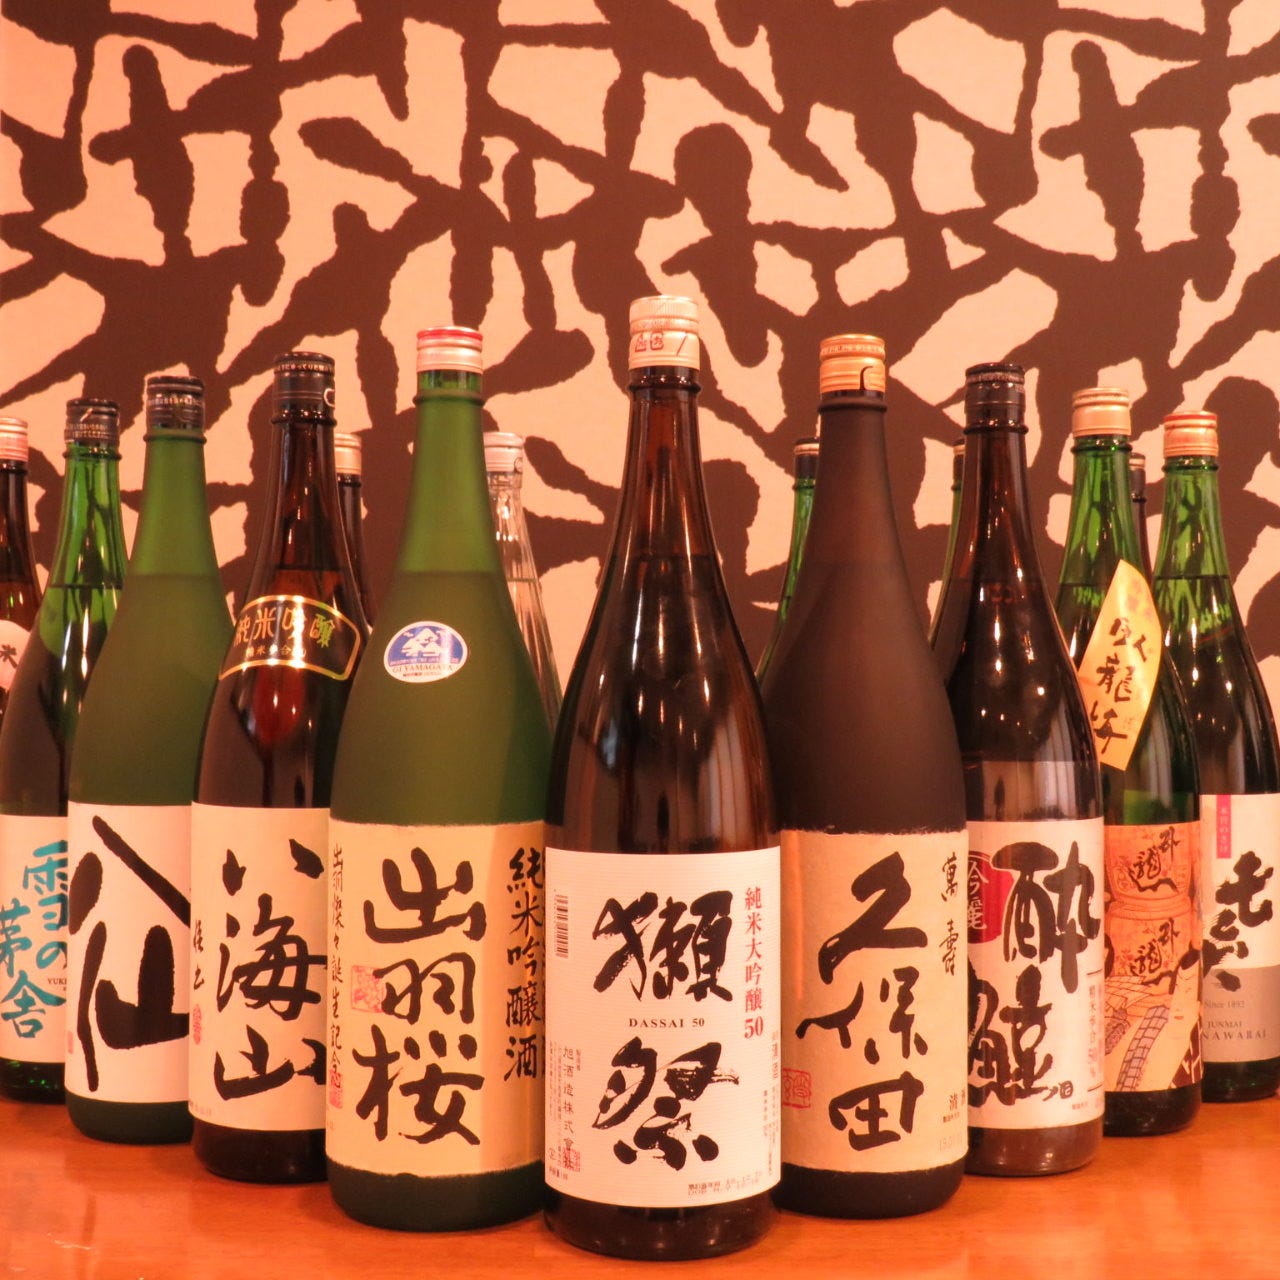 全国各地から厳選した美味しい日本酒を集結しております。